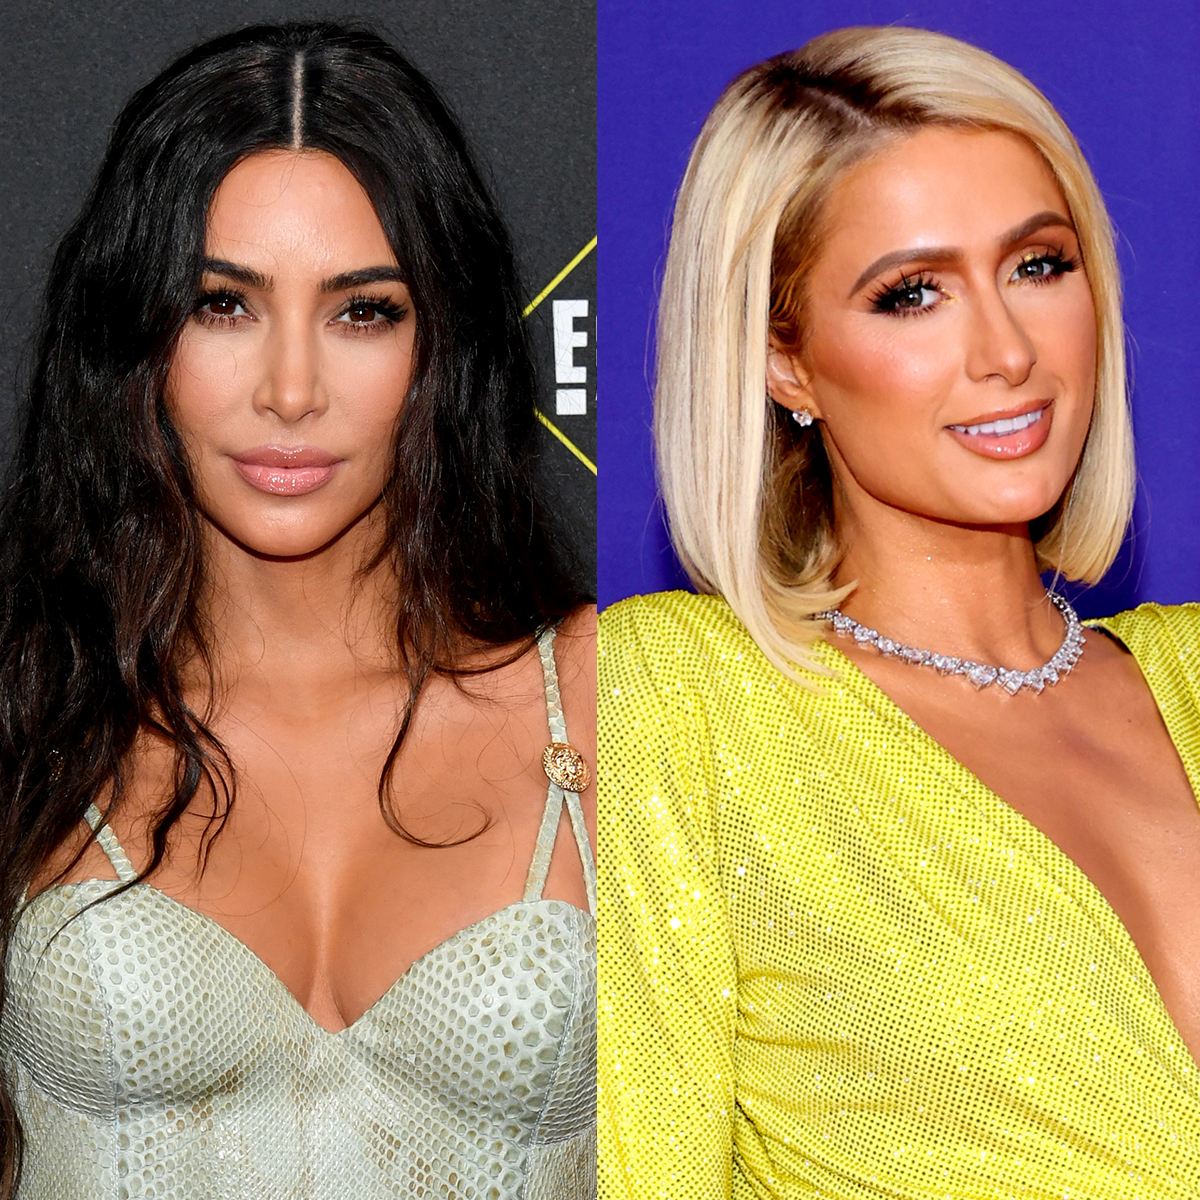 Paris Hilton vs. Kim Kardashian: Who did it first? – SheKnows